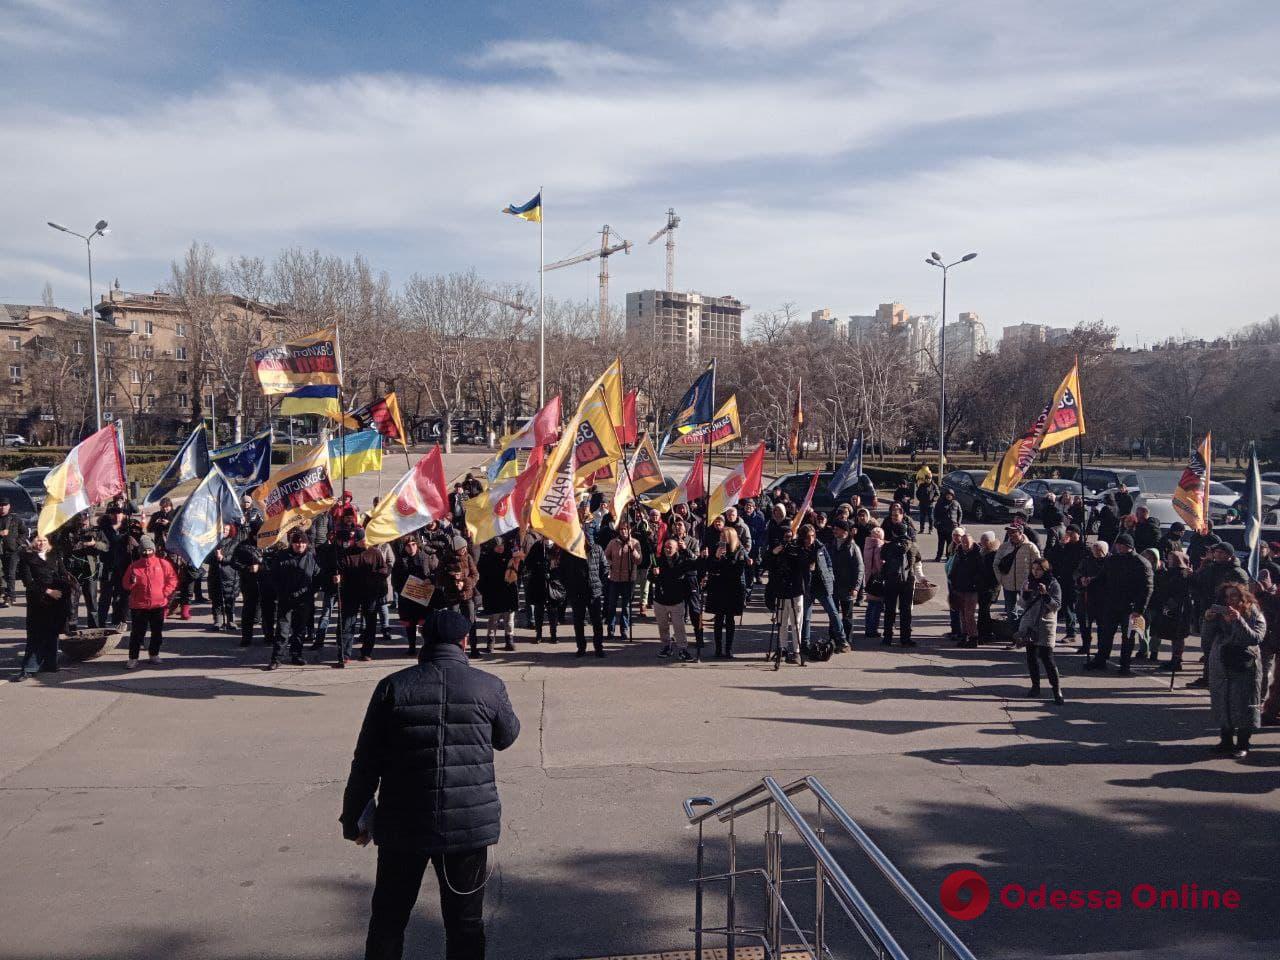 В Одессе предприниматели митинговали против кассовых аппаратов